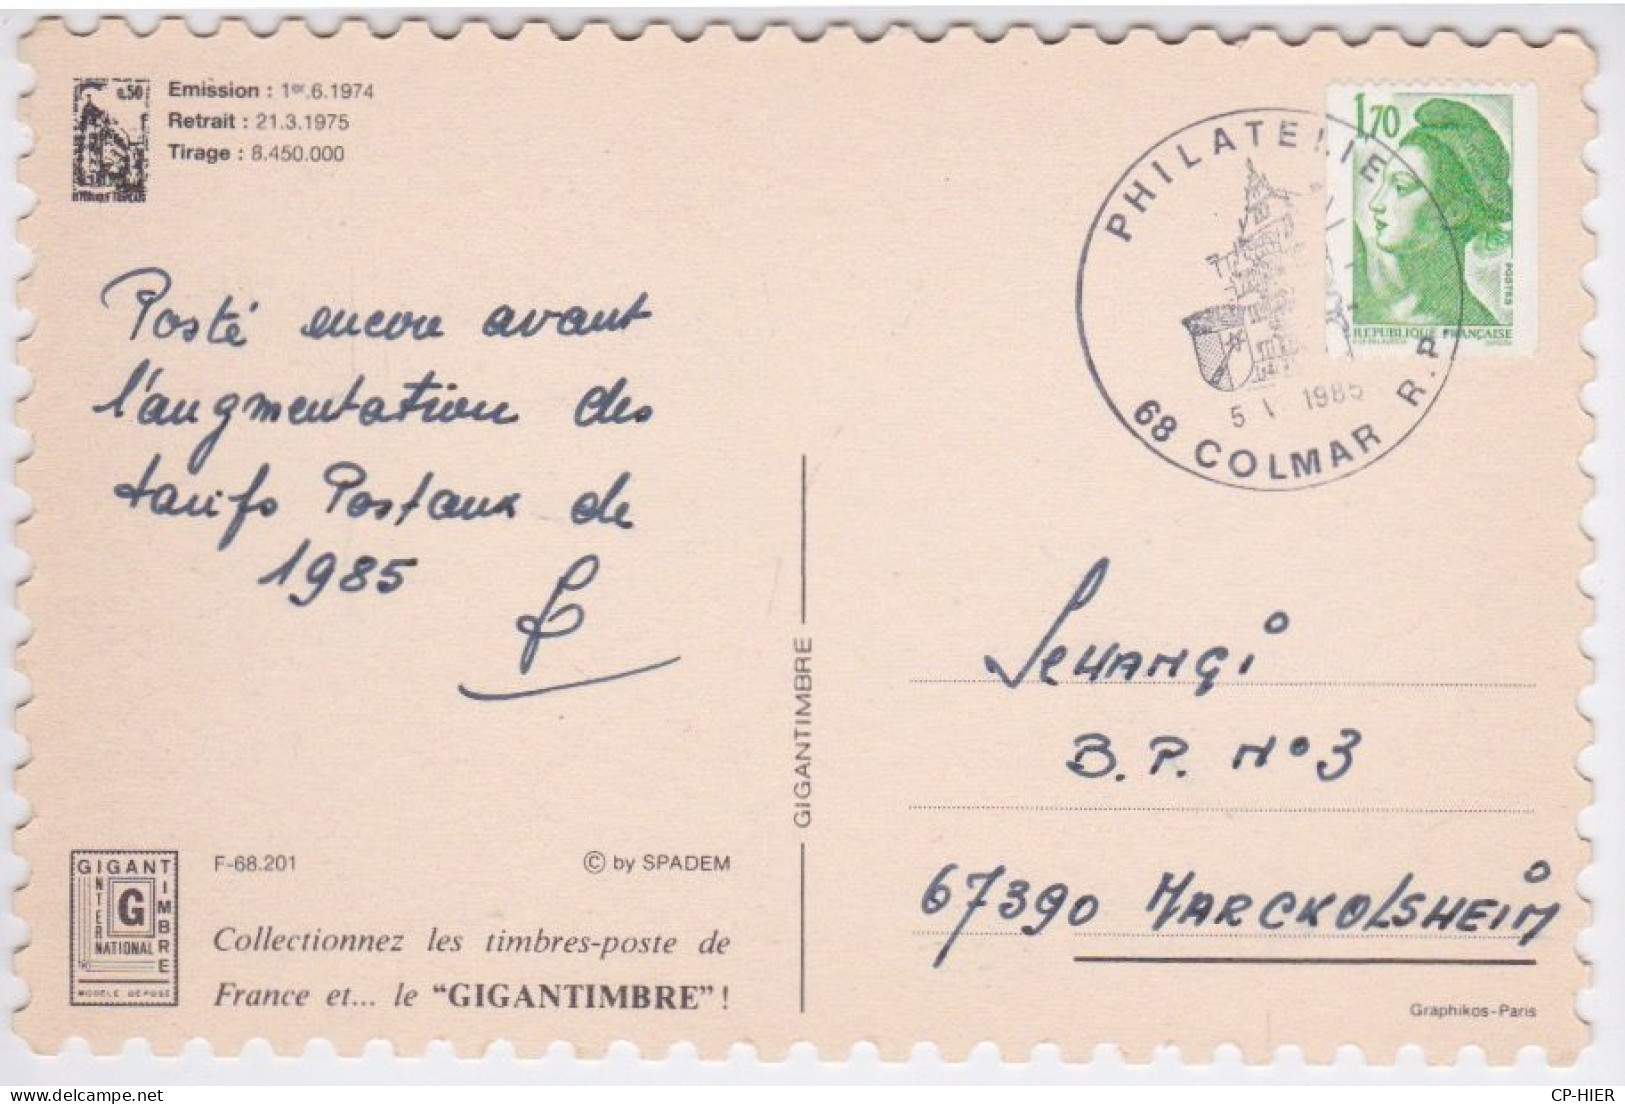 TIMBRE COLMAR POSTEE AVANT L'AUGMENTATION DES TARIFS POSTAUX DE 1985 - CACHET PHILATELIE COLMAR 5 VI 1985 - Stamps (pictures)